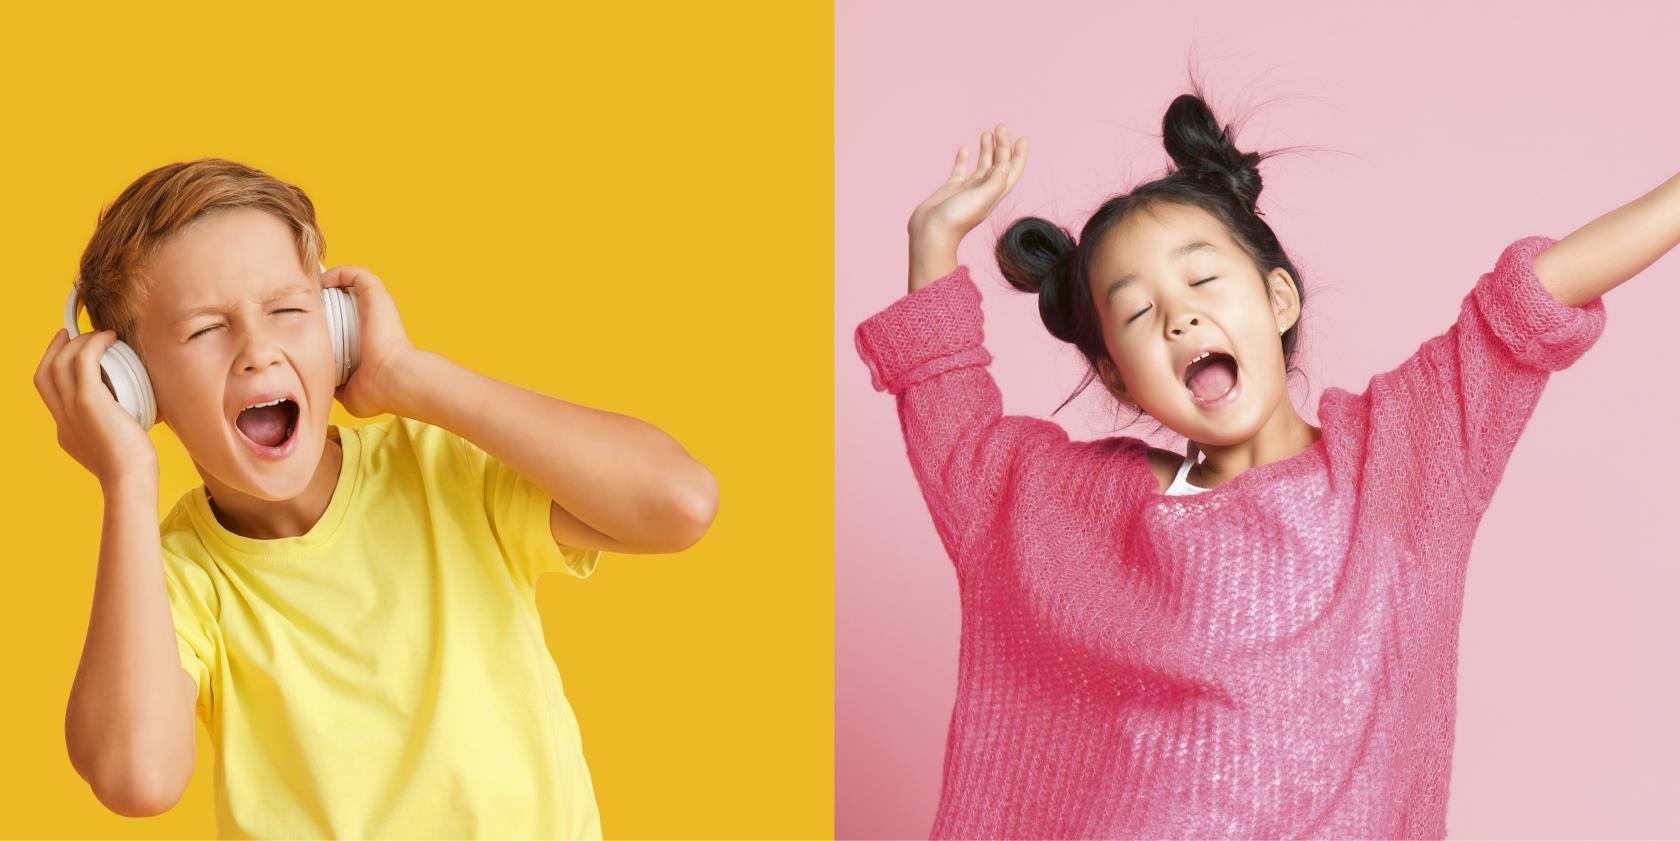 Till vänster: Pojke i gul tröja sjunger med glädje. Till höger: Flicka i rosa tröja sjunger med stor glädje. 